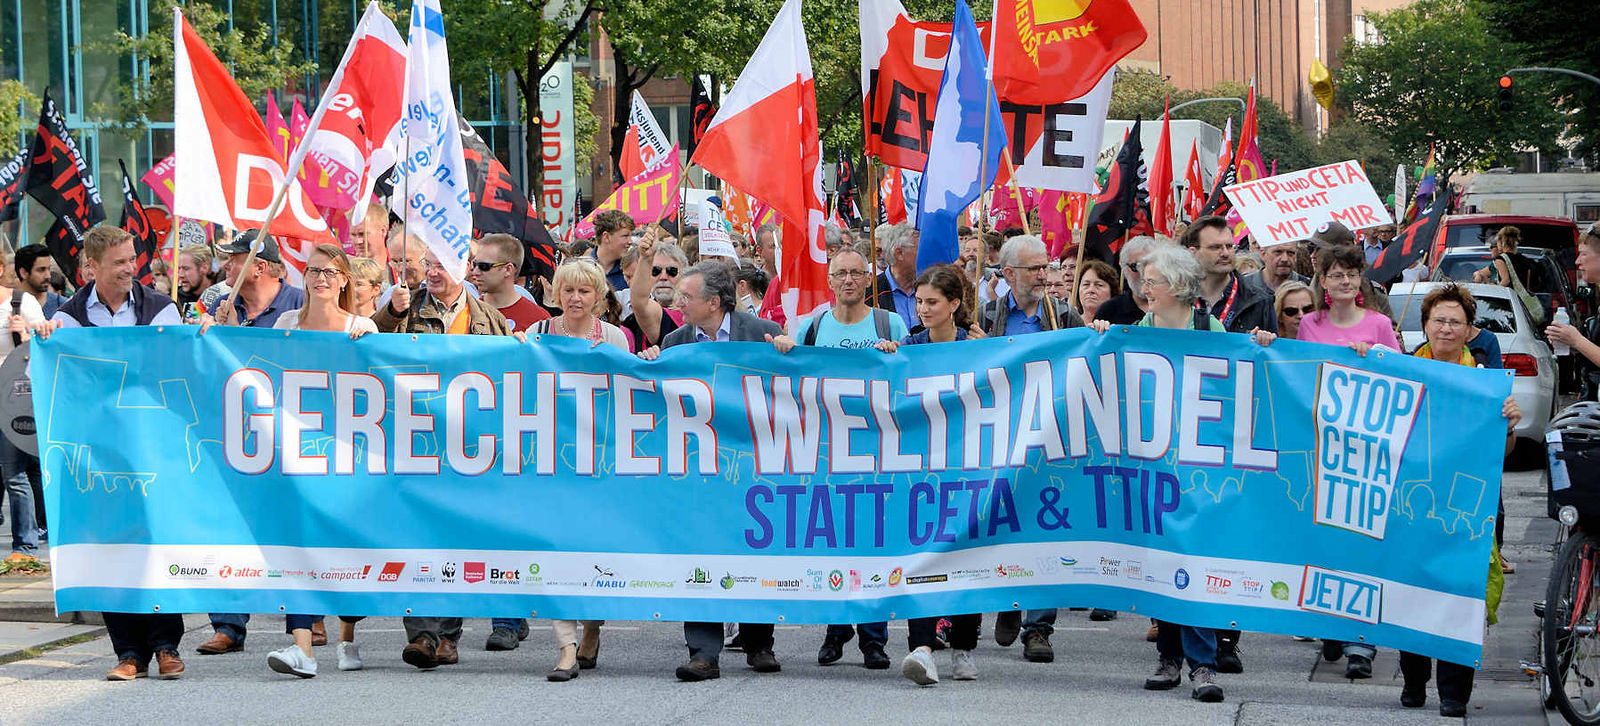 8005 In Hamburg demonstrierten am 17.09.16 zwischen 30.000 und 65.000 Menschen gegen die geplanten Freihandelsabkommen TTIP und CETA. Mehr als 30 Organisationen aus Norddeutschland hatten zu den Protesten aufgerufen. 